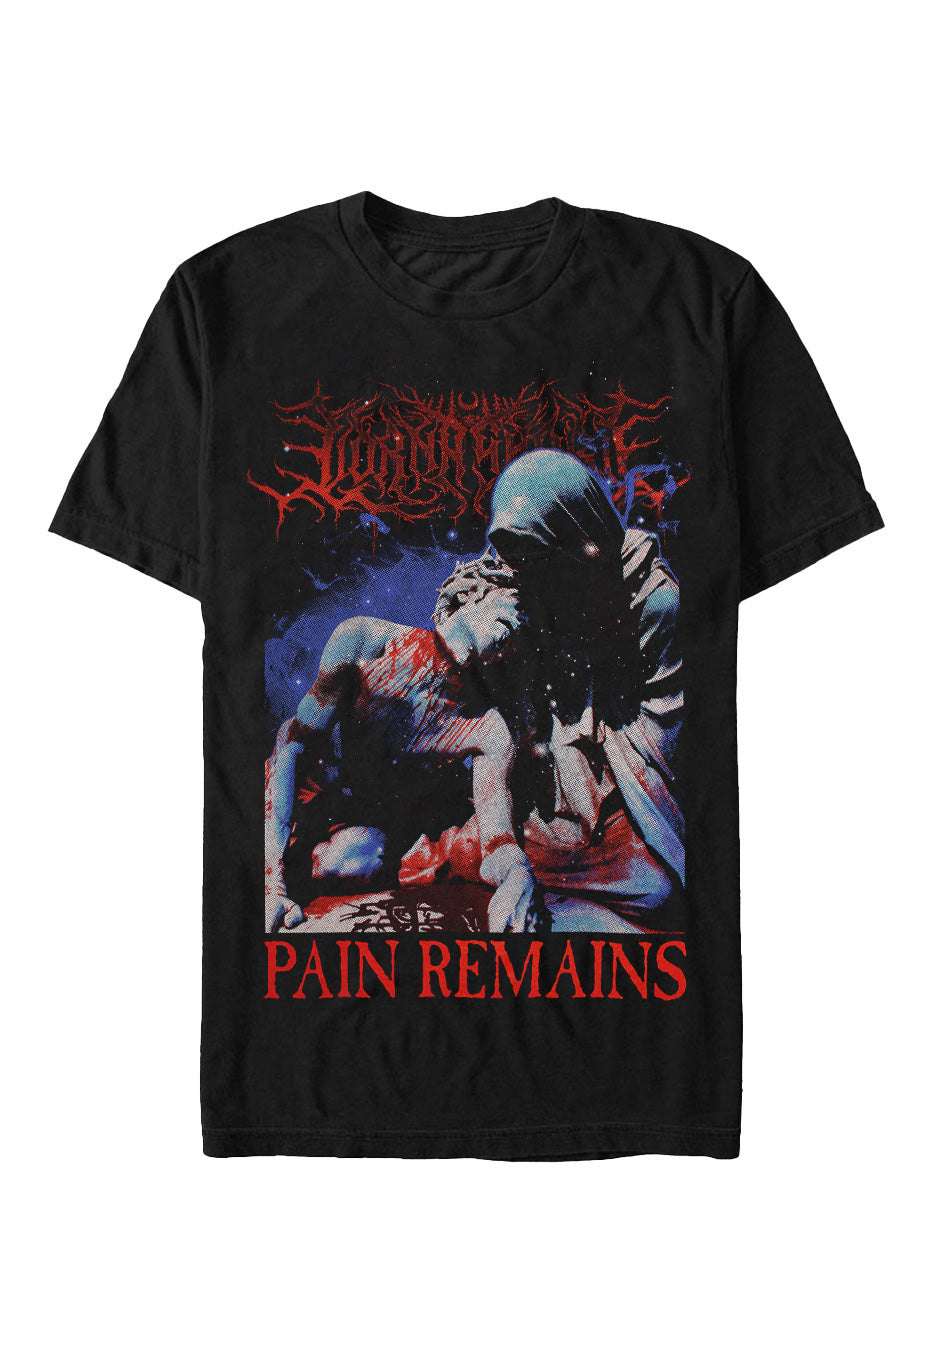 Lorna Shore - Pain Remains Tour 2023 - T-Shirt | Neutral-Image